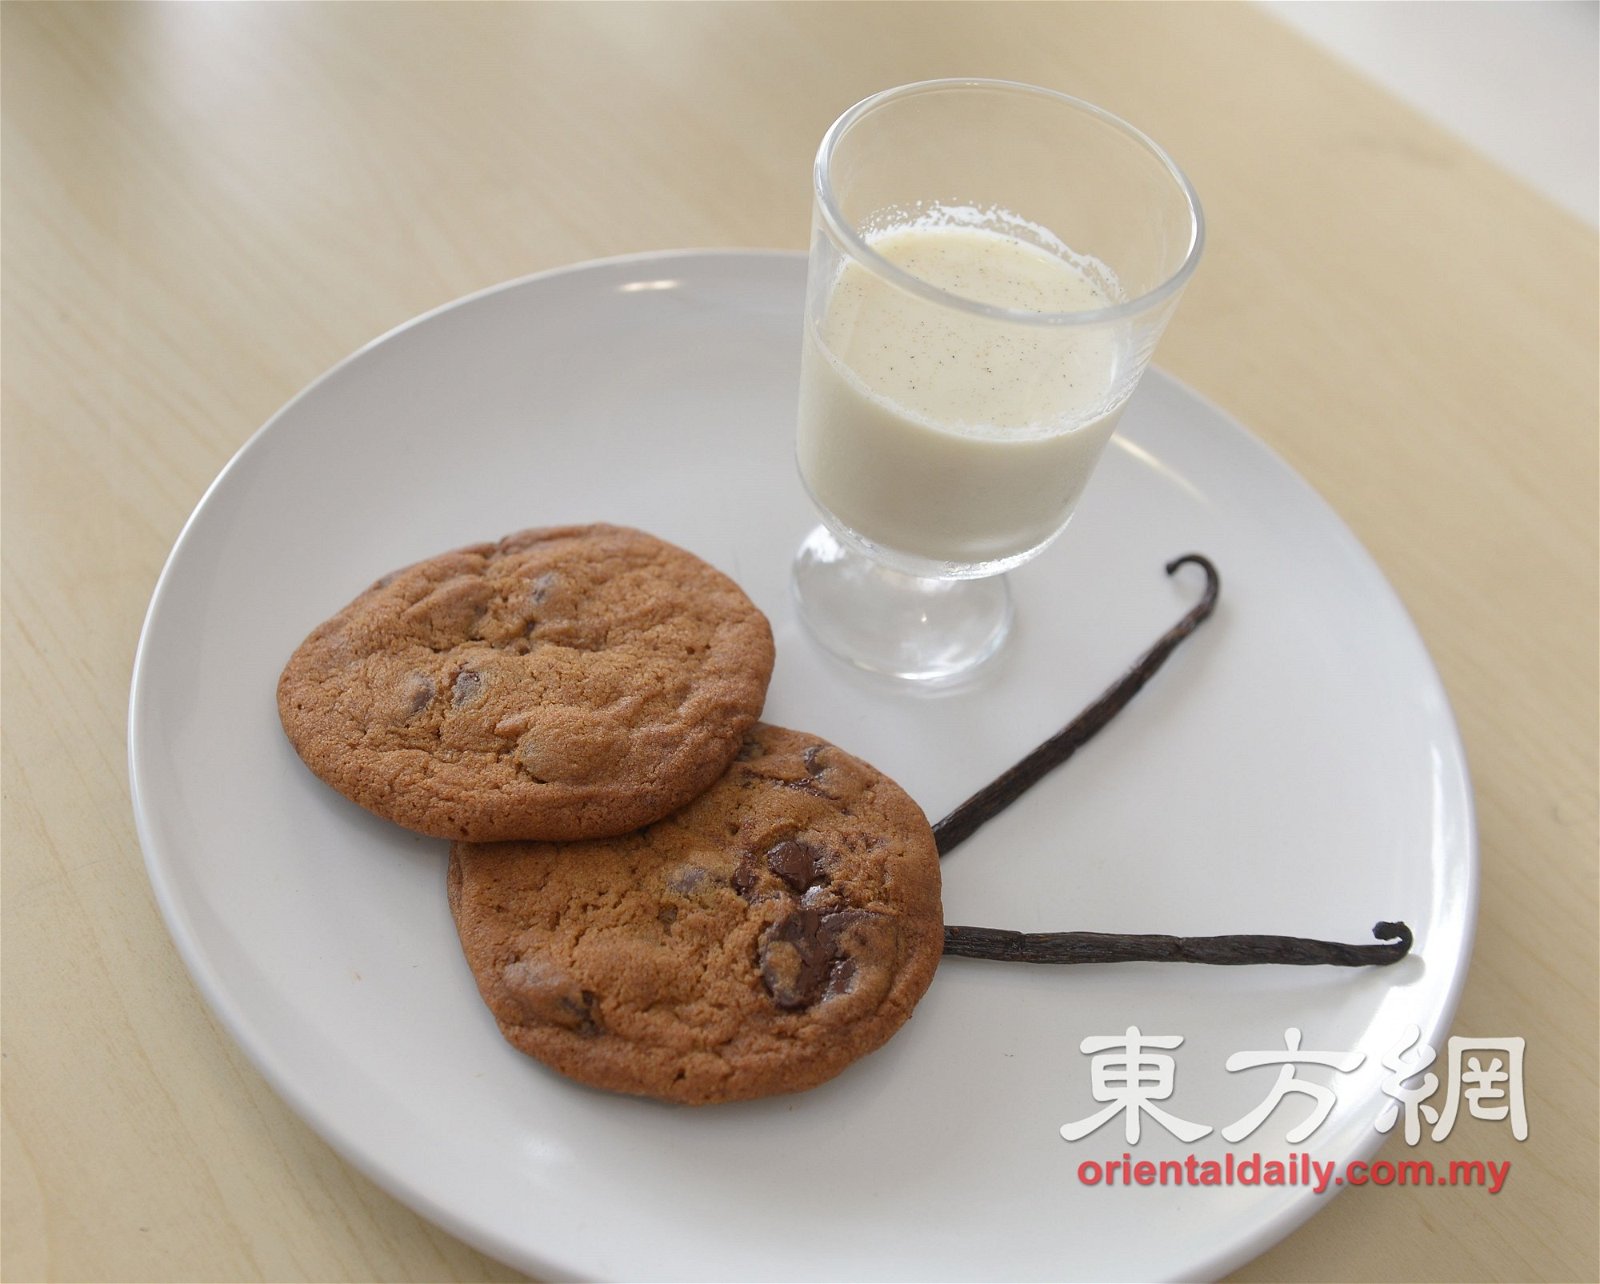 巧克力饼佐香草牛奶：浓郁的巧克力饼干蘸热香草牛奶，简单却好吃。